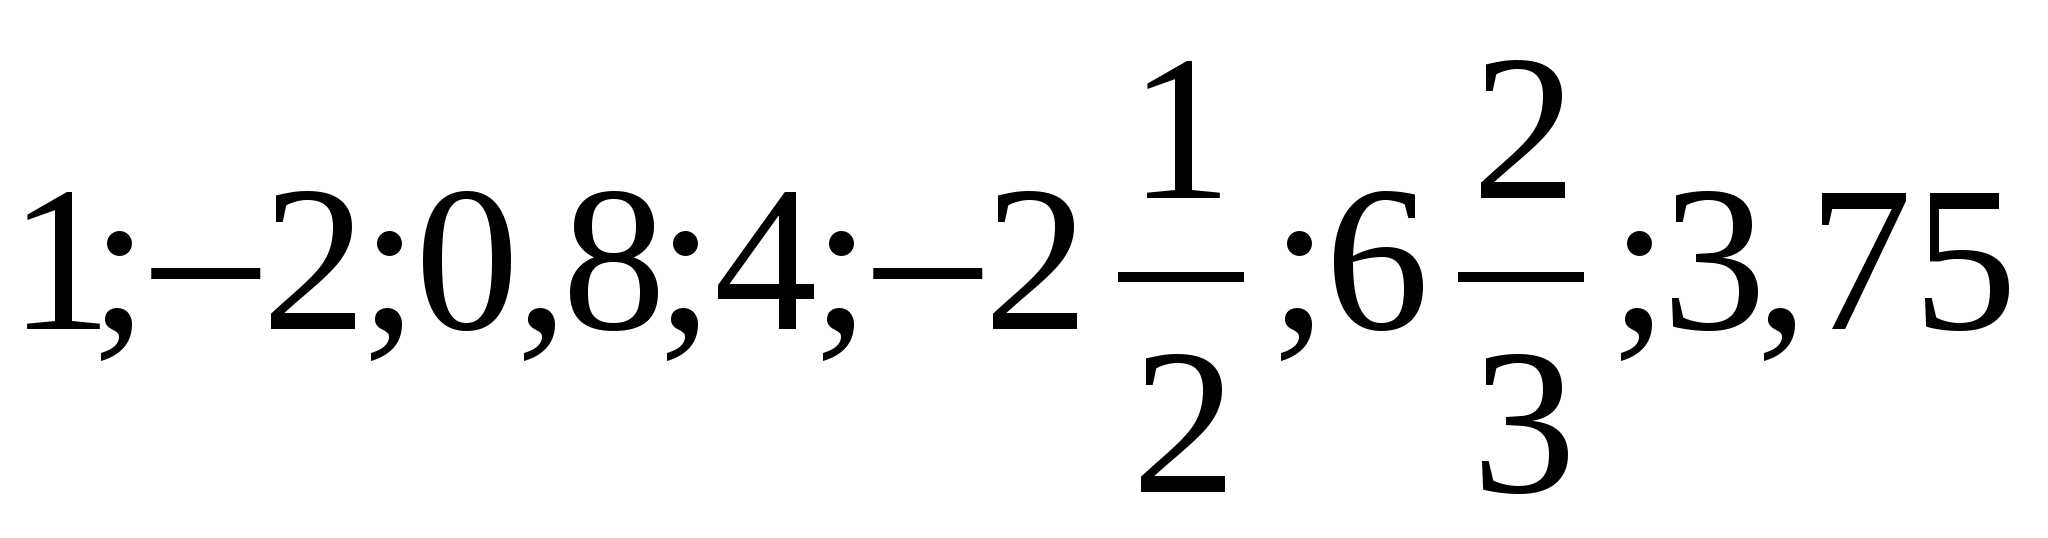 Конспект урока по теме Сравнение рациональных чисел